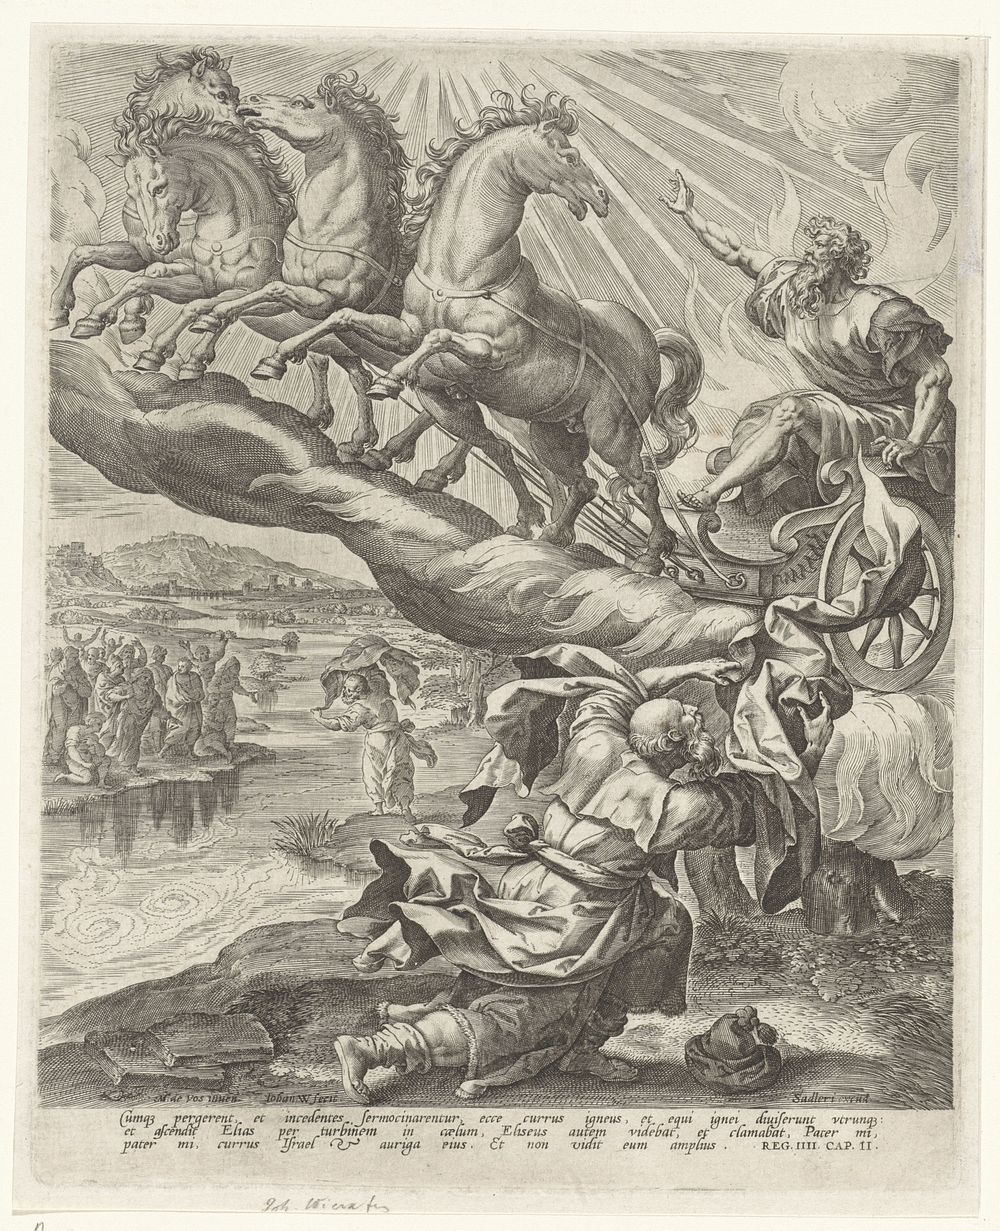 Hemelvaart van Elia (1582 - 1583) by Johannes Wierix, Maerten de Vos and Johann Sadeler I